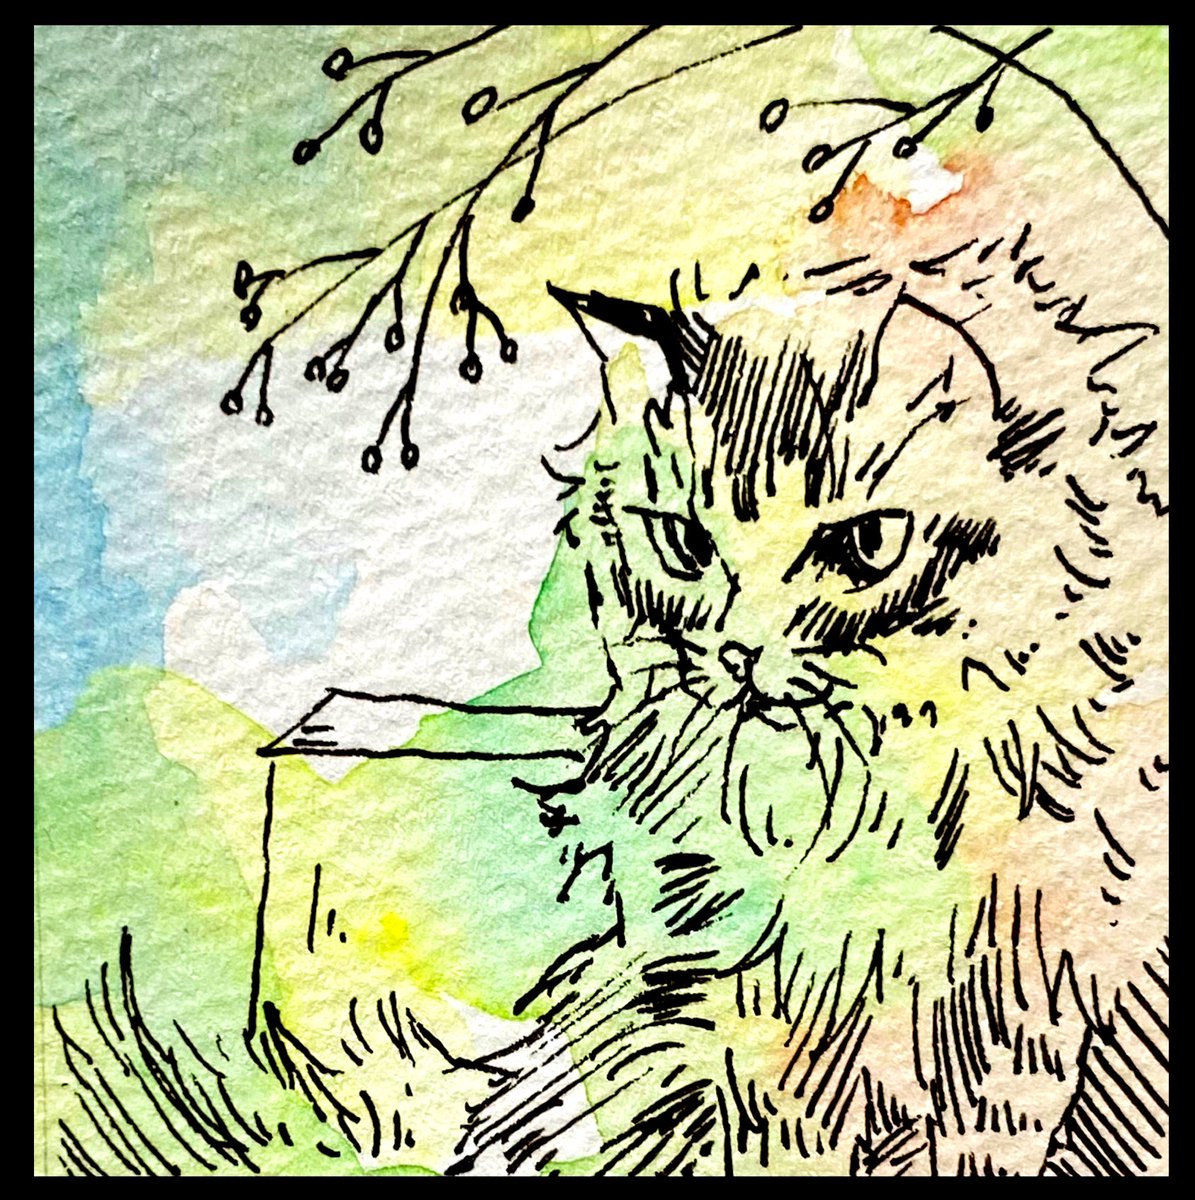 先に水彩でランダムに彩色をしてから描いたものです。
#猫イラスト #絵描きさんとつながりたい #絵柄好みって人にフォローされたい 